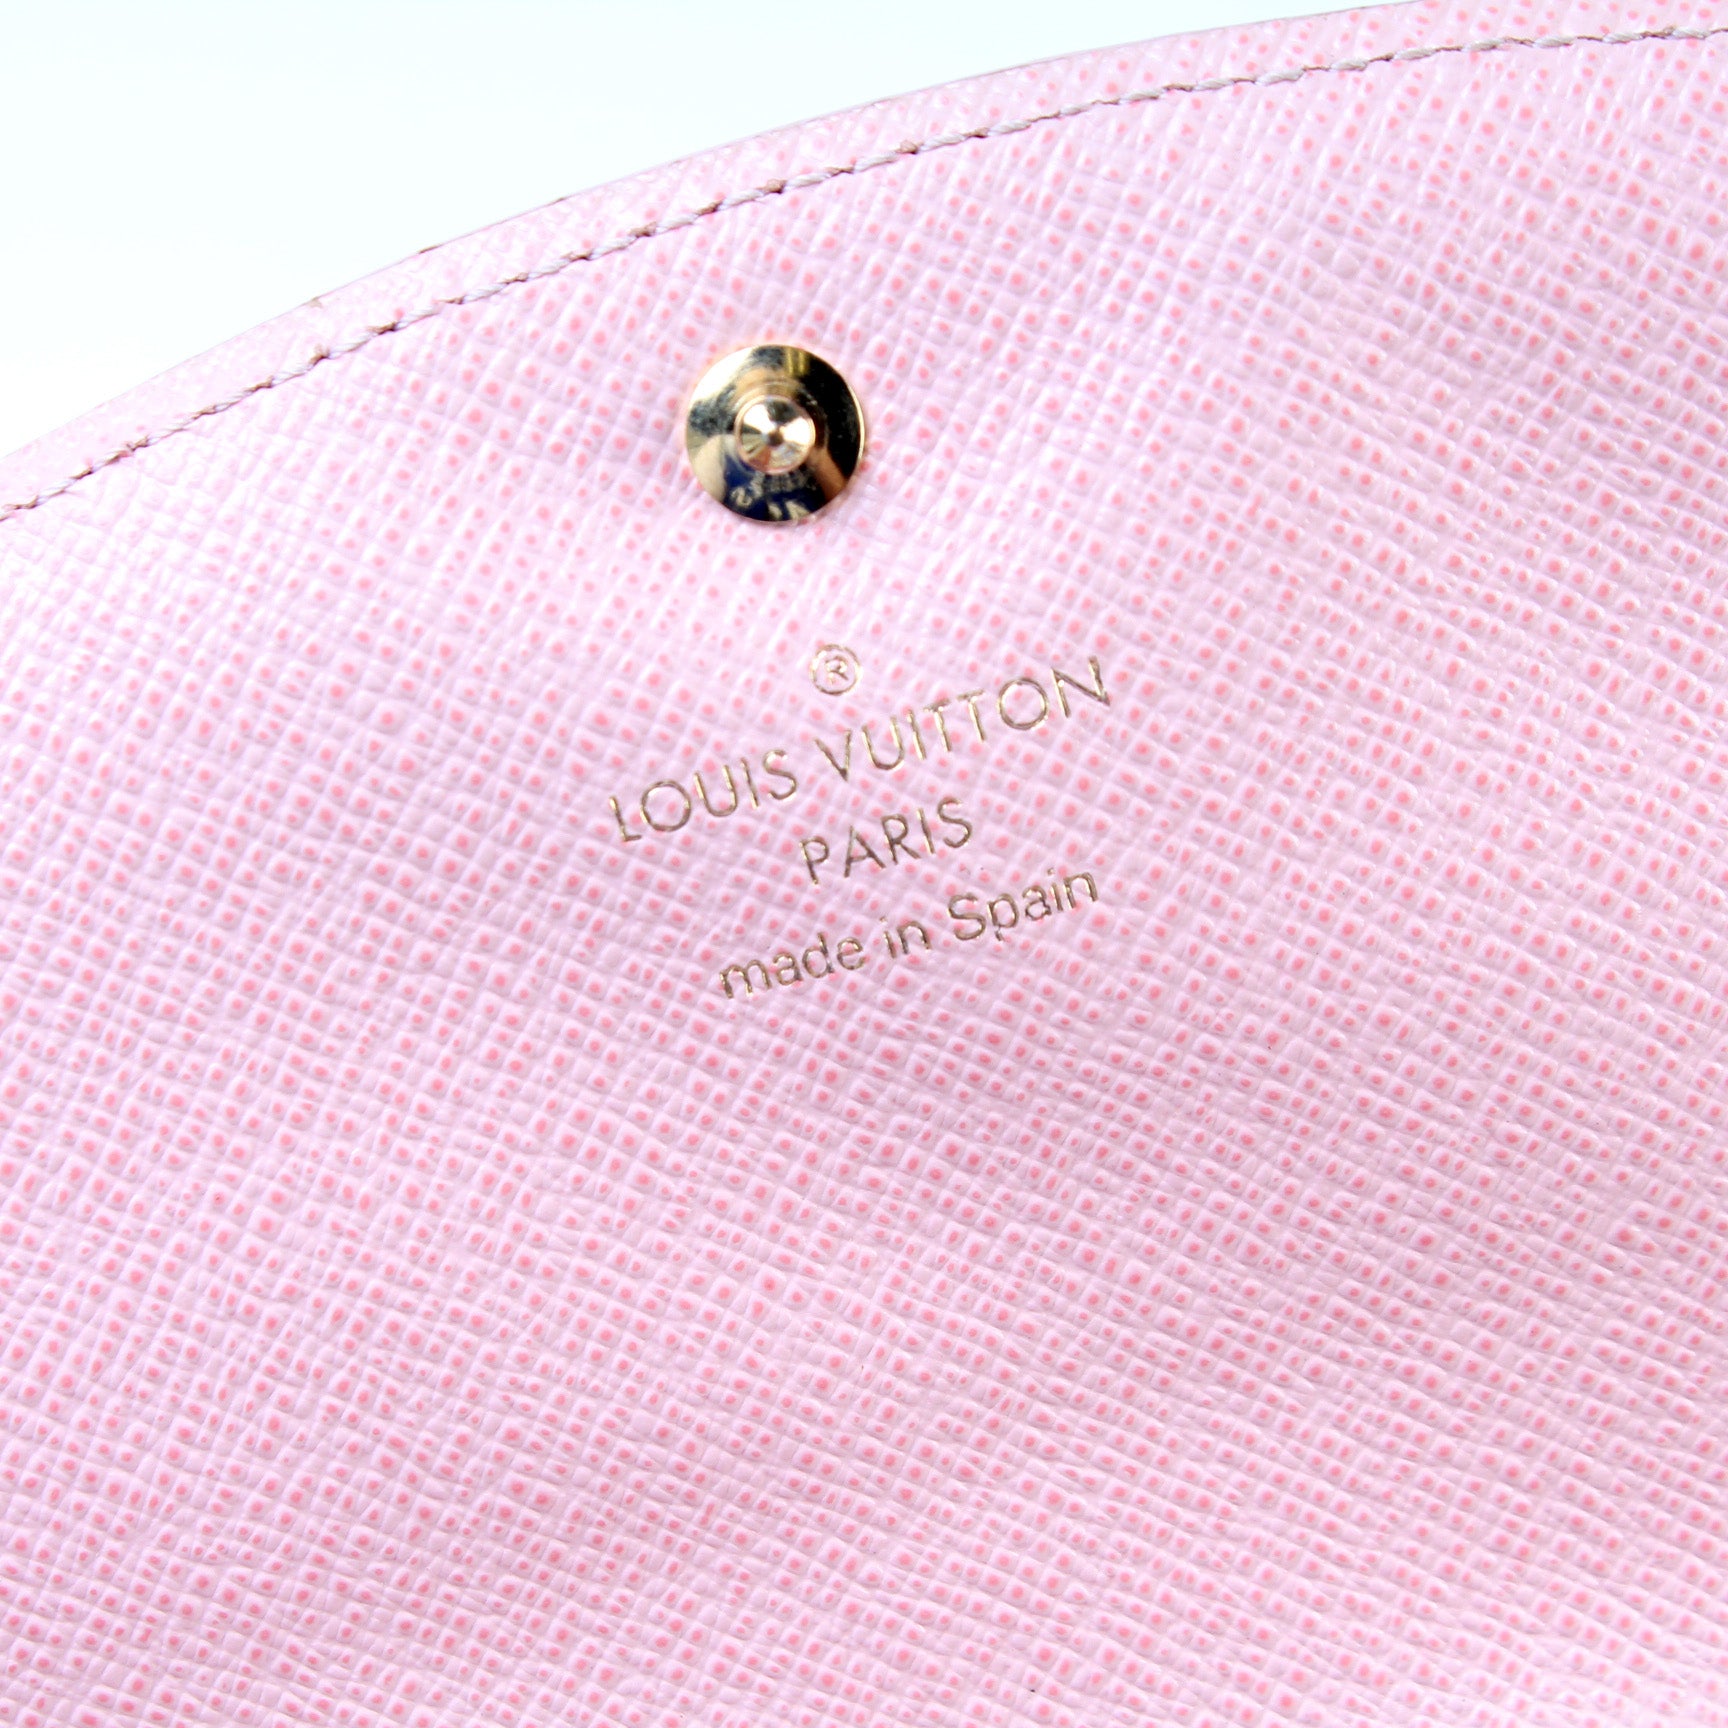 Caissa Wallet Damier Ebene – Keeks Designer Handbags